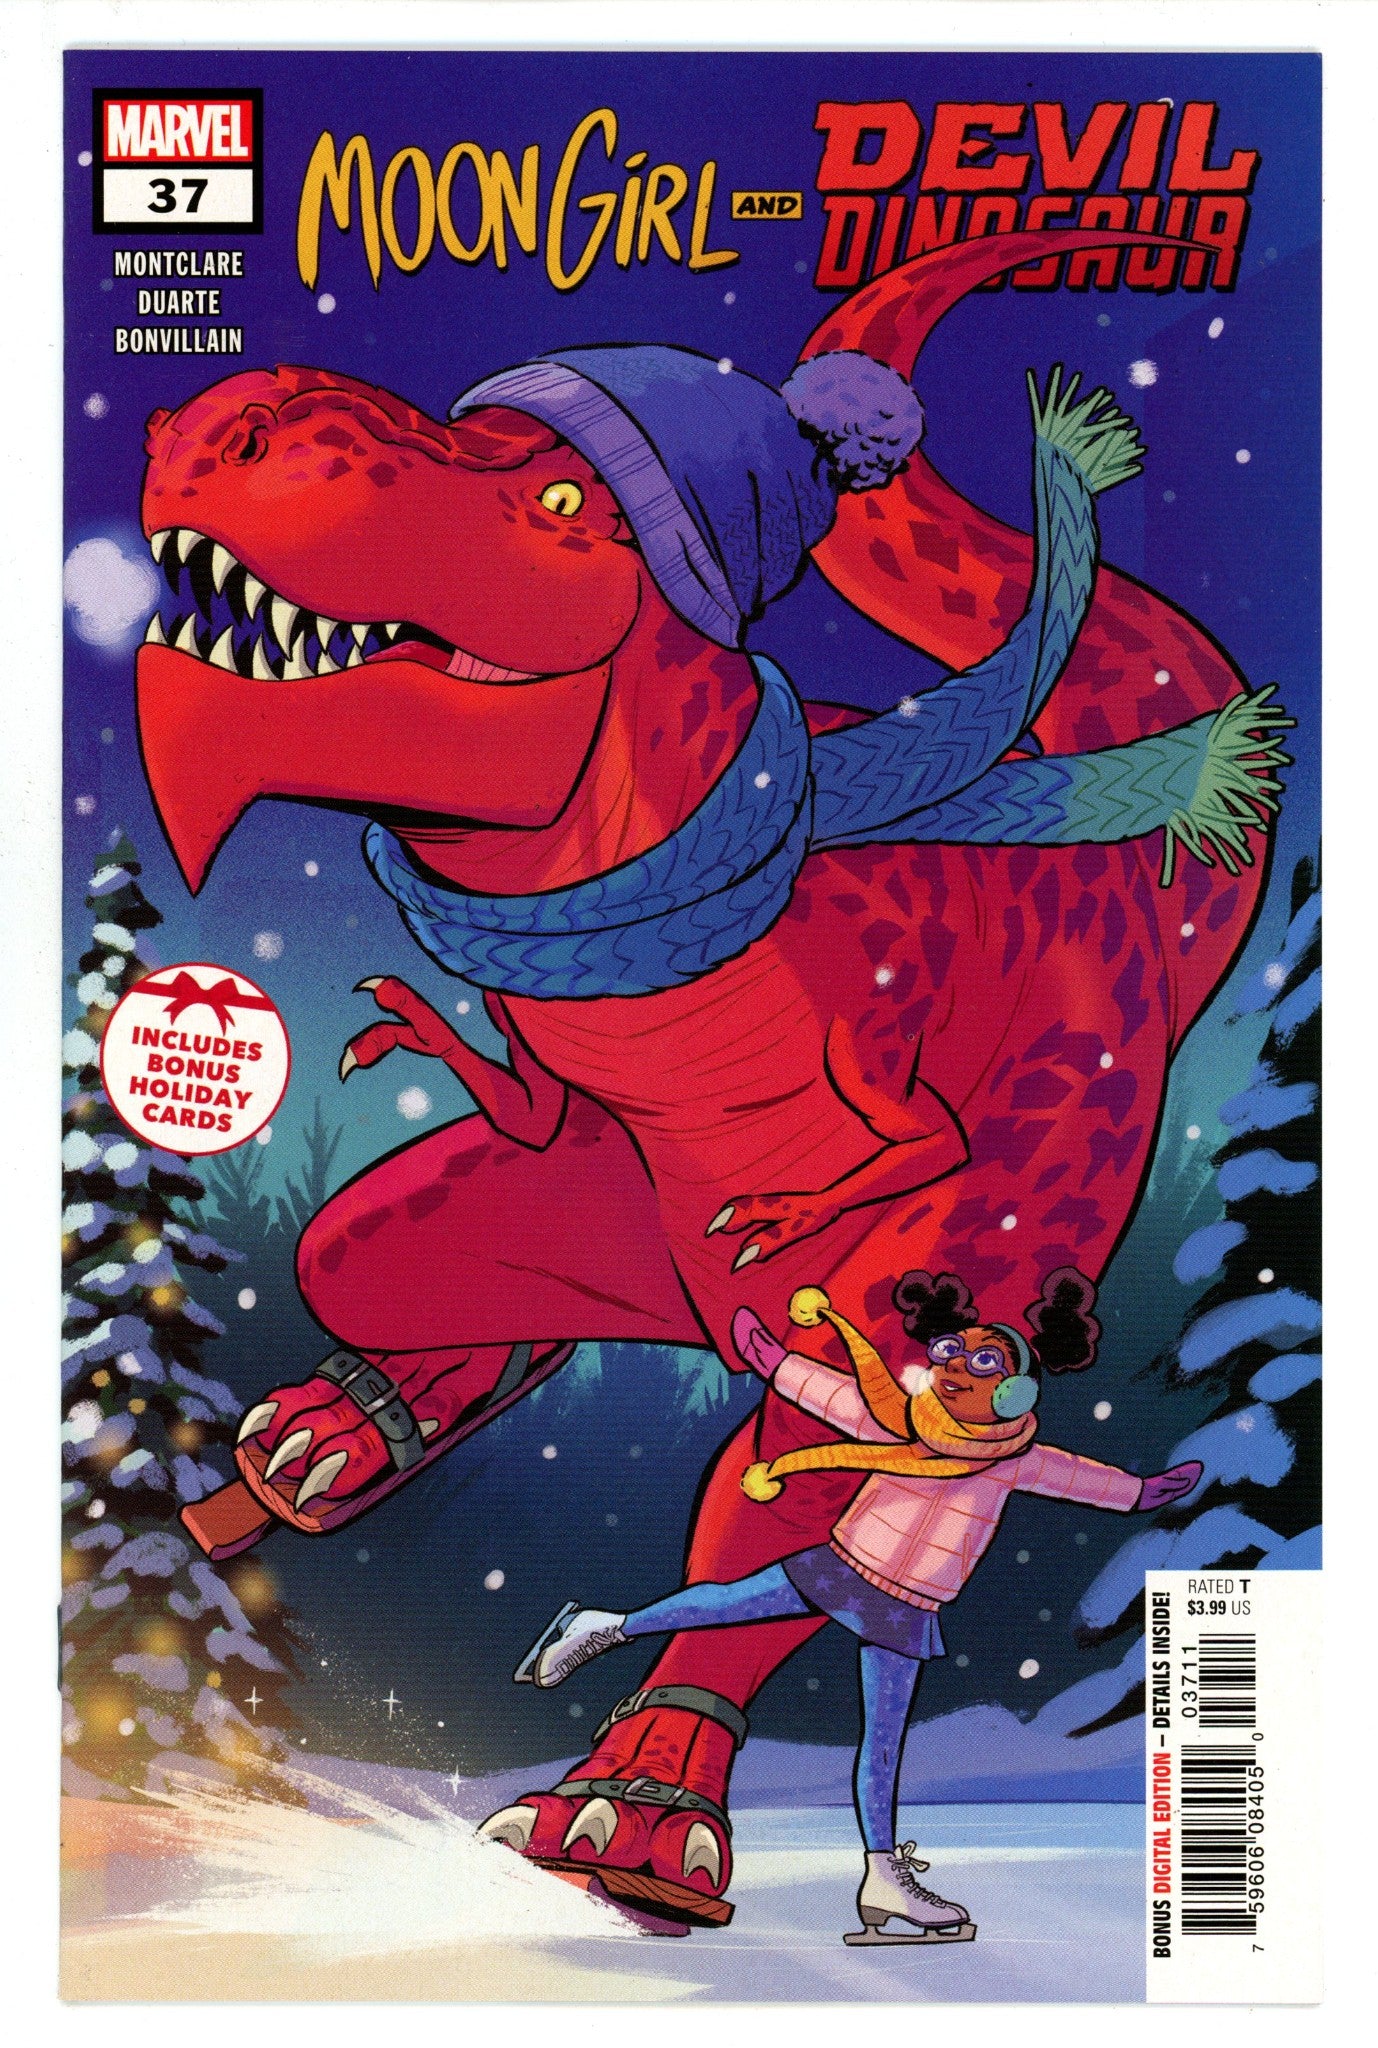 Moon Girl and Devil Dinosaur Vol 1 37 High Grade (2019) 